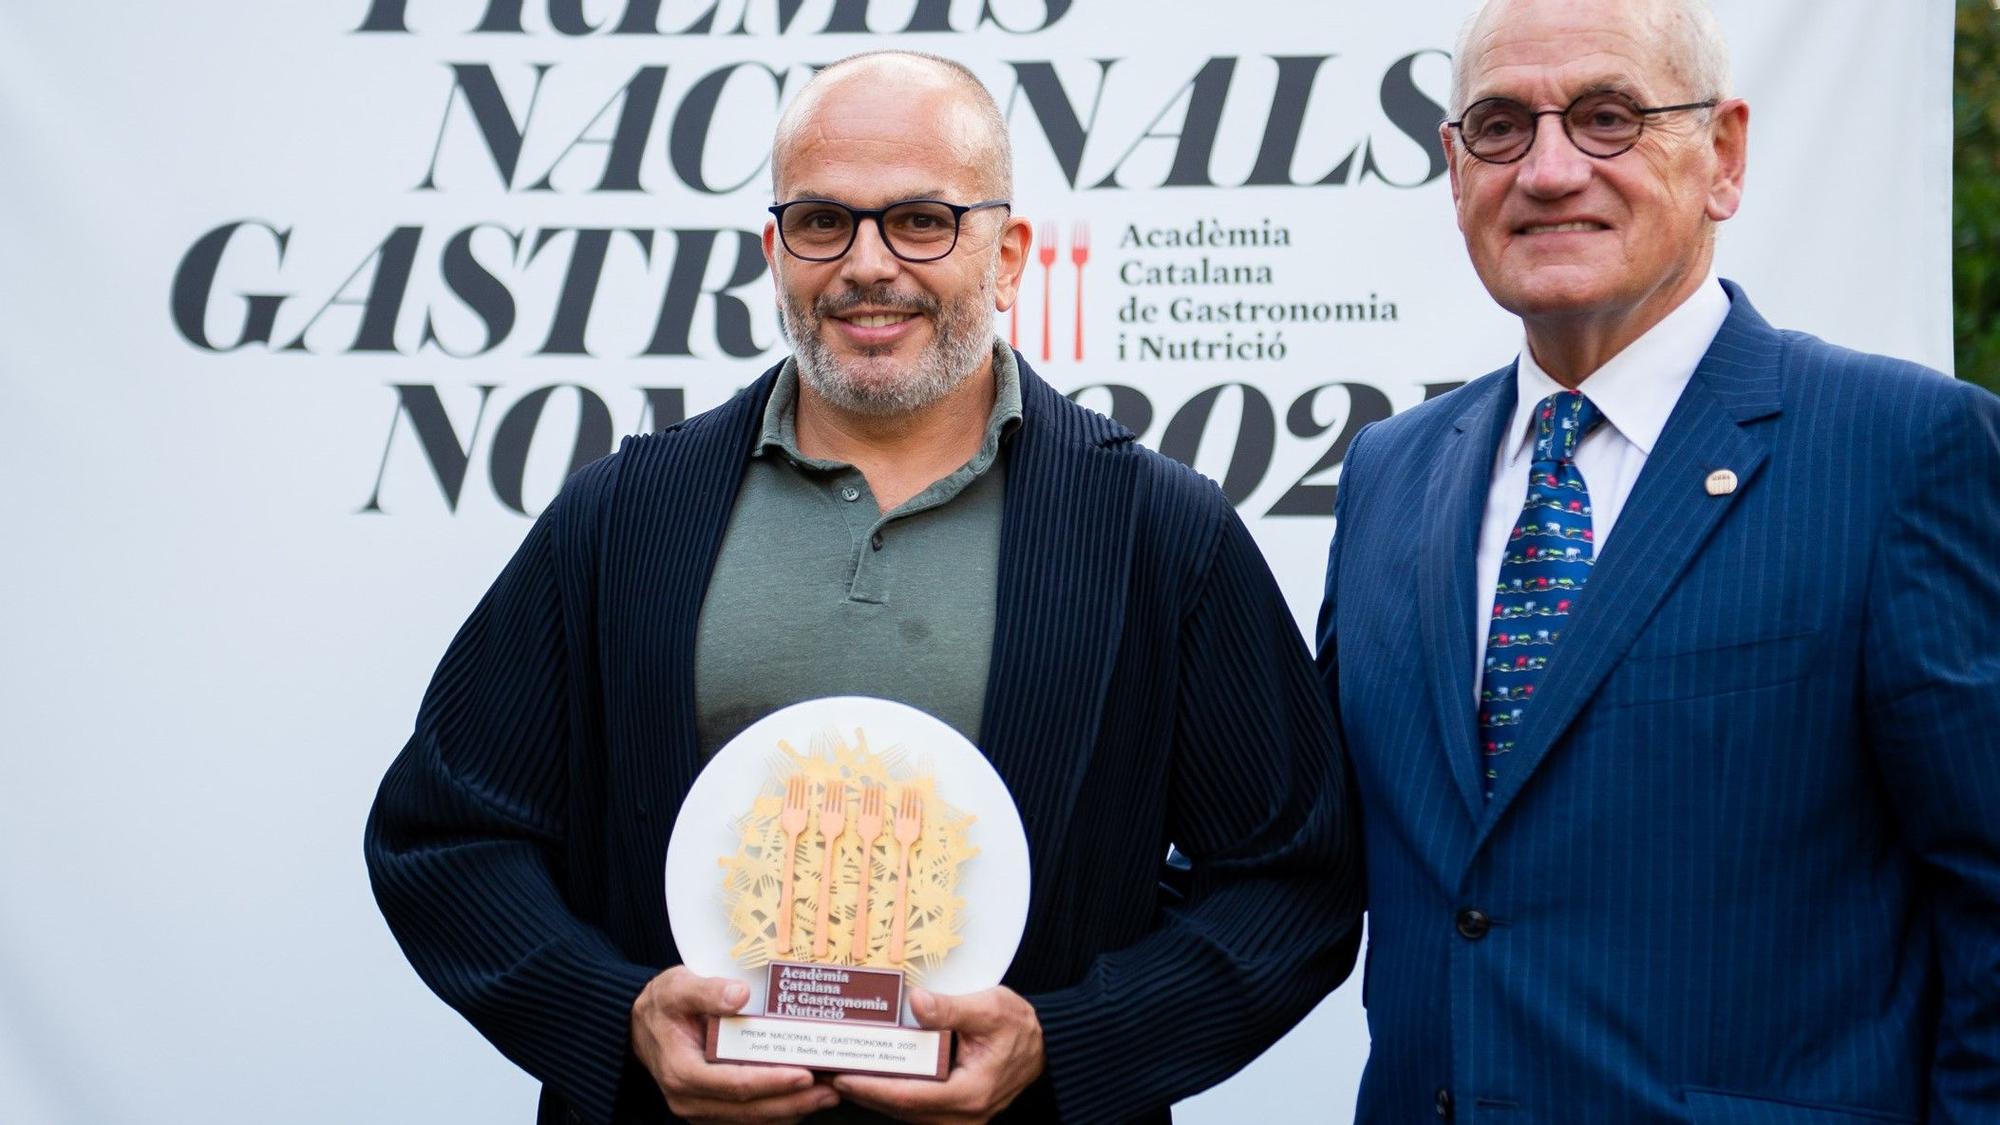 Jordi Vilà, Premi Nacional de Gastronomia 2021, con el galardón, junto al presidente de la Acadèmia Catalana de Gastronomia i Nutrició, Carles Vilarrubí